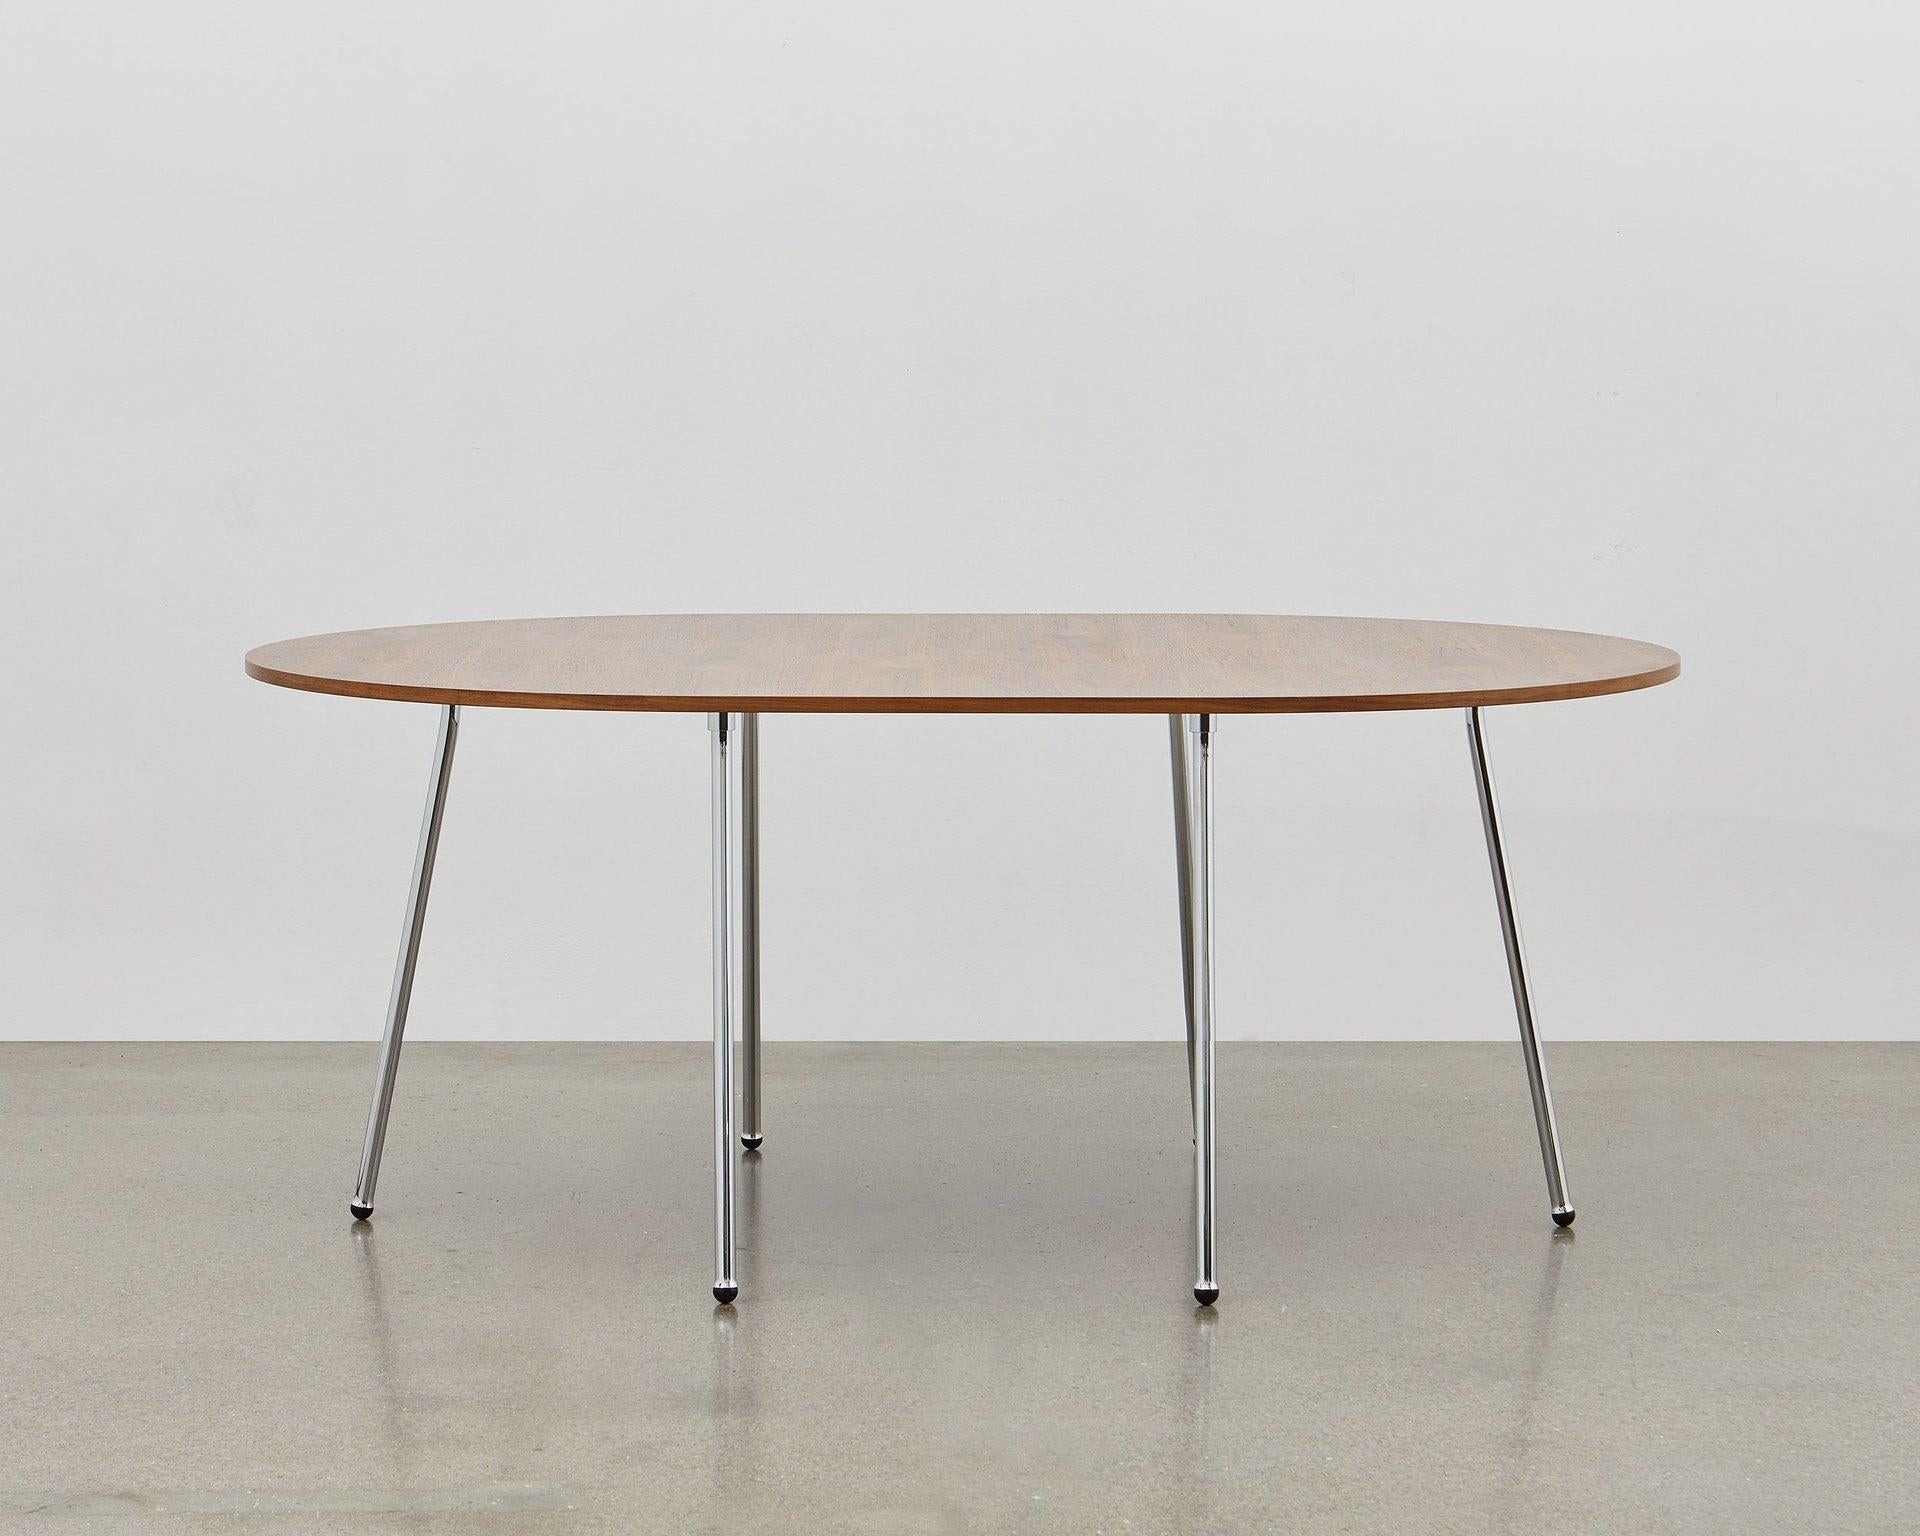 La table à manger PH a été conçue en 1937 ; elle est simple et élégante. La fonction rencontre la forme et l'aspect léger et distinctif de la table de salle à manger PH lui permet de s'adapter à tous les usages à la maison, au travail ou dans une